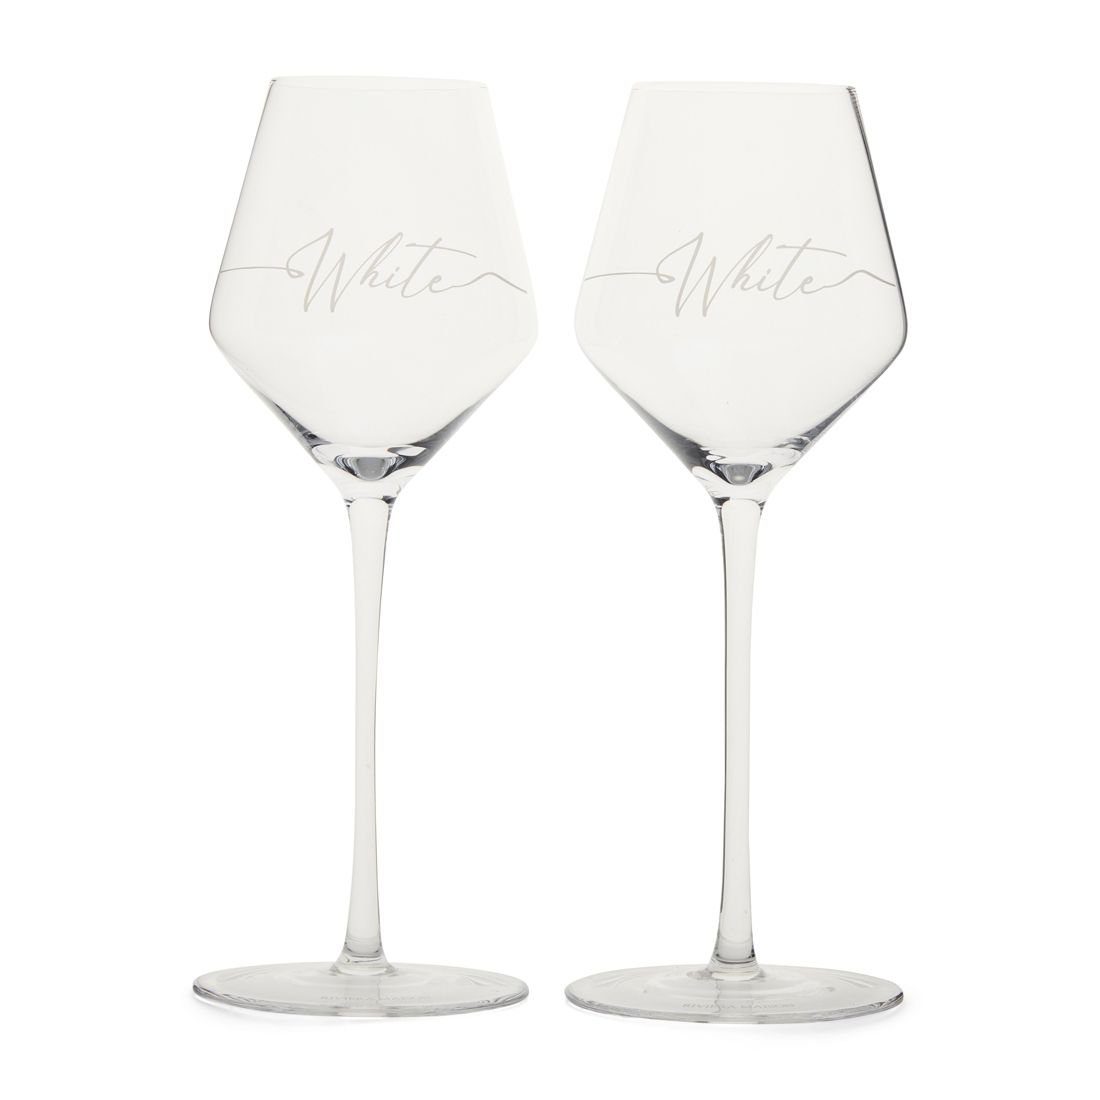 Rivièra Maison Weißweinglas RM White Wine Glass 2 pcs - 2er Set Weißwein Gläser, Glas